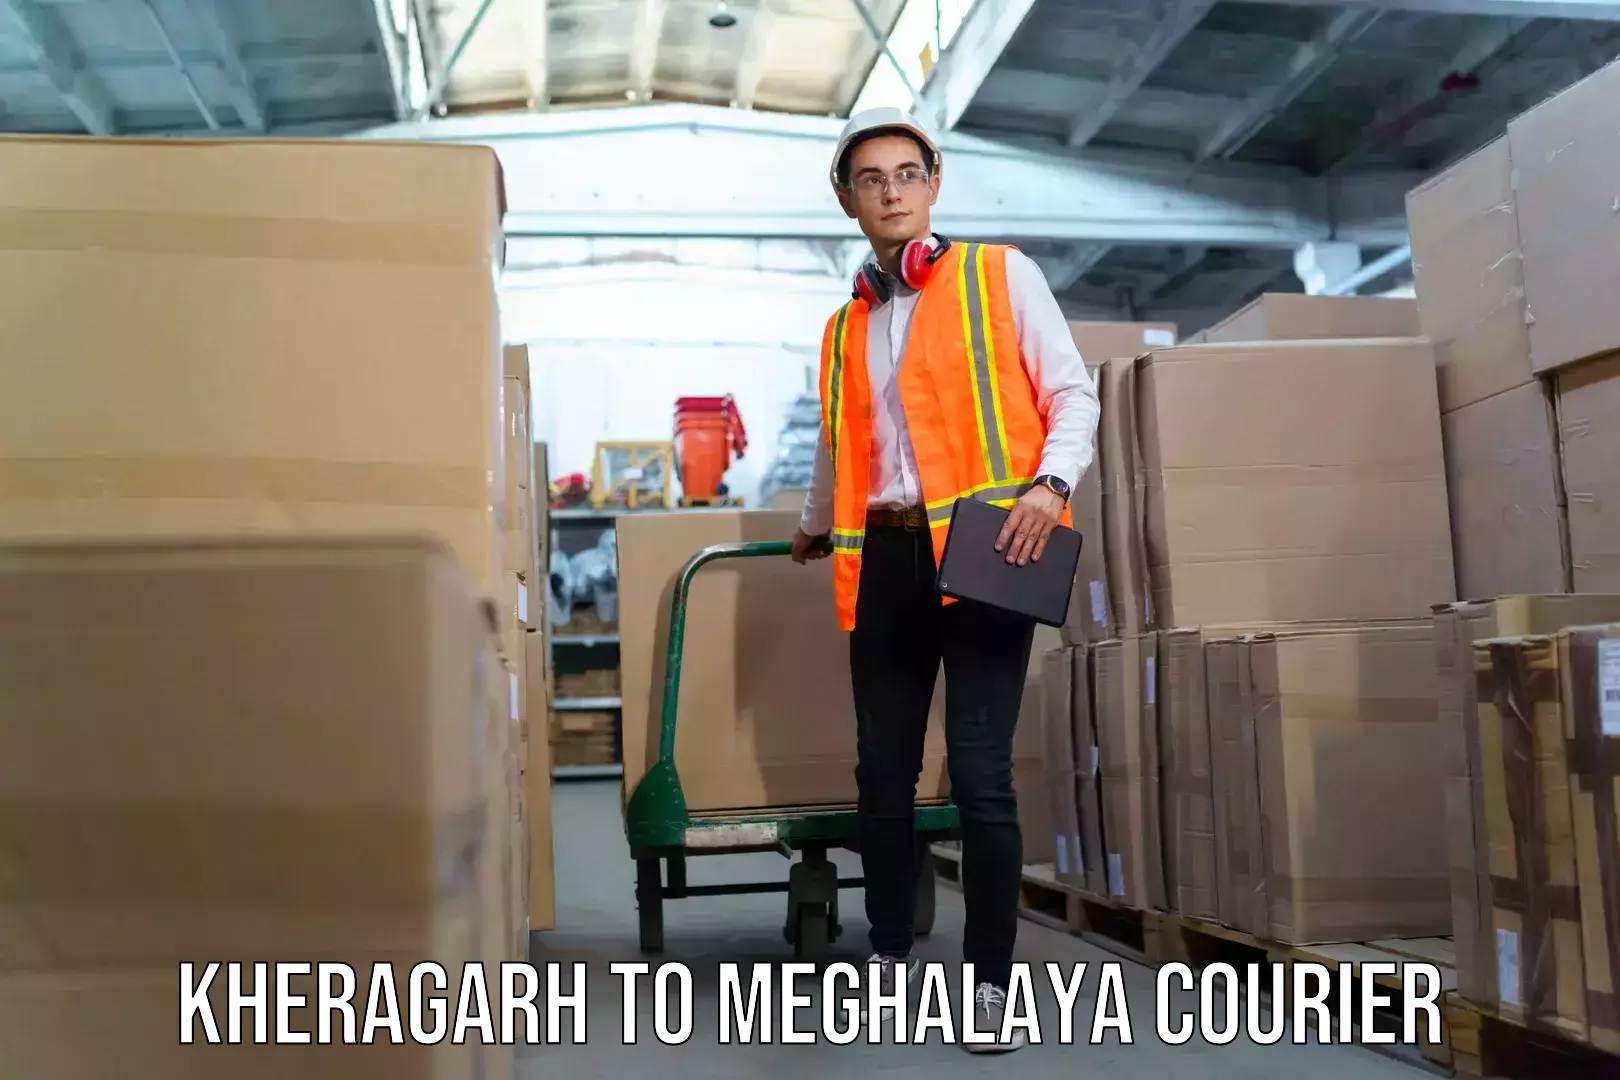 Baggage transport professionals Kheragarh to Meghalaya